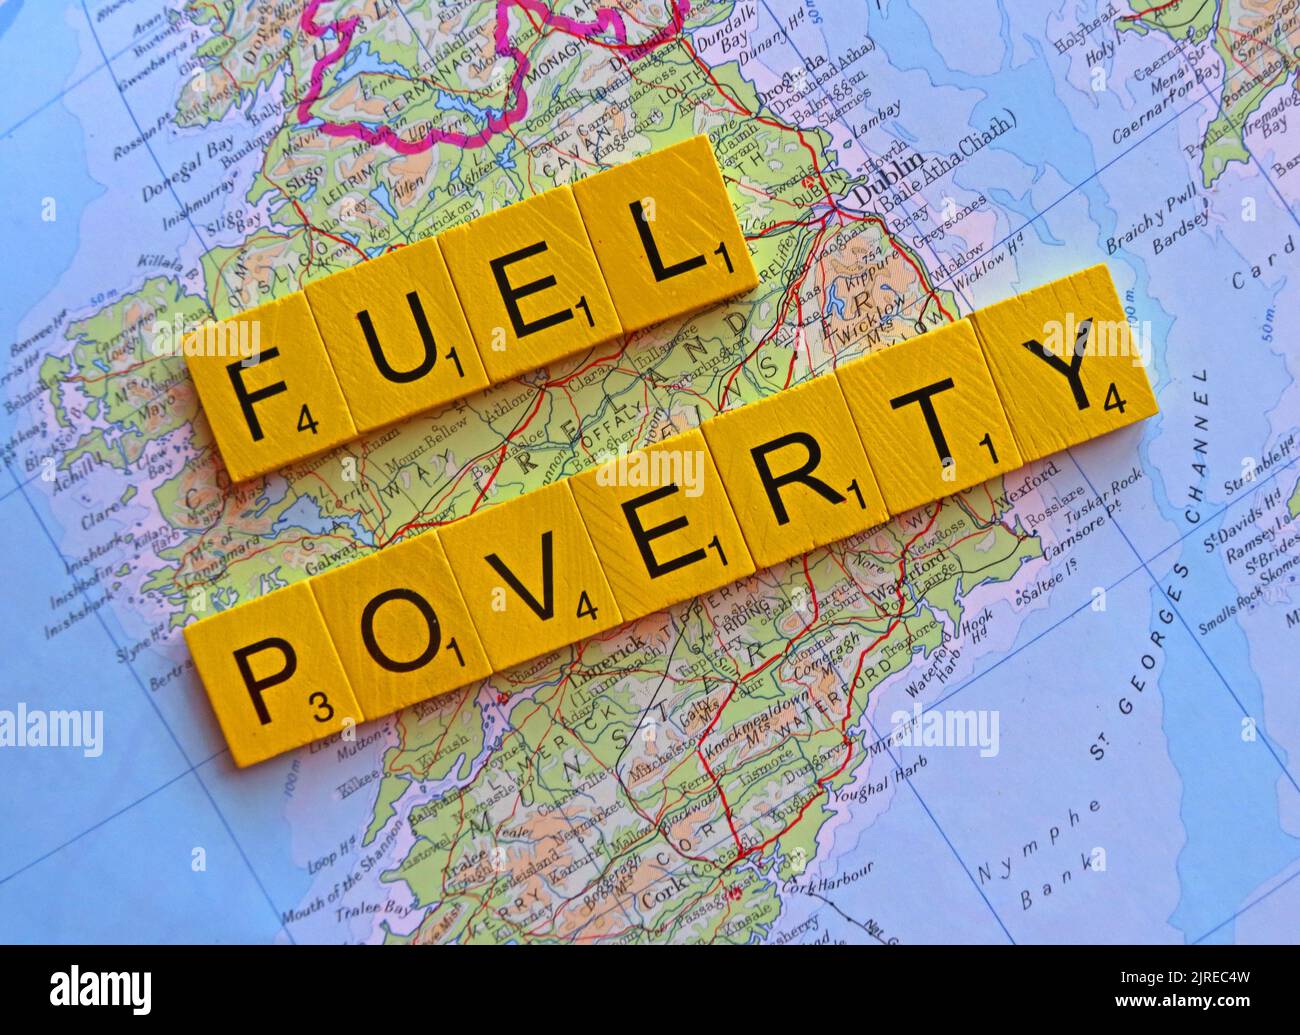 Mappa che mostra Eire, Irlanda del Sud con parole Fuel povertà ortografato. Più della metà delle famiglie britanniche in tutta la Gran Bretagna sceglieranno di mangiare o riscaldare Foto Stock